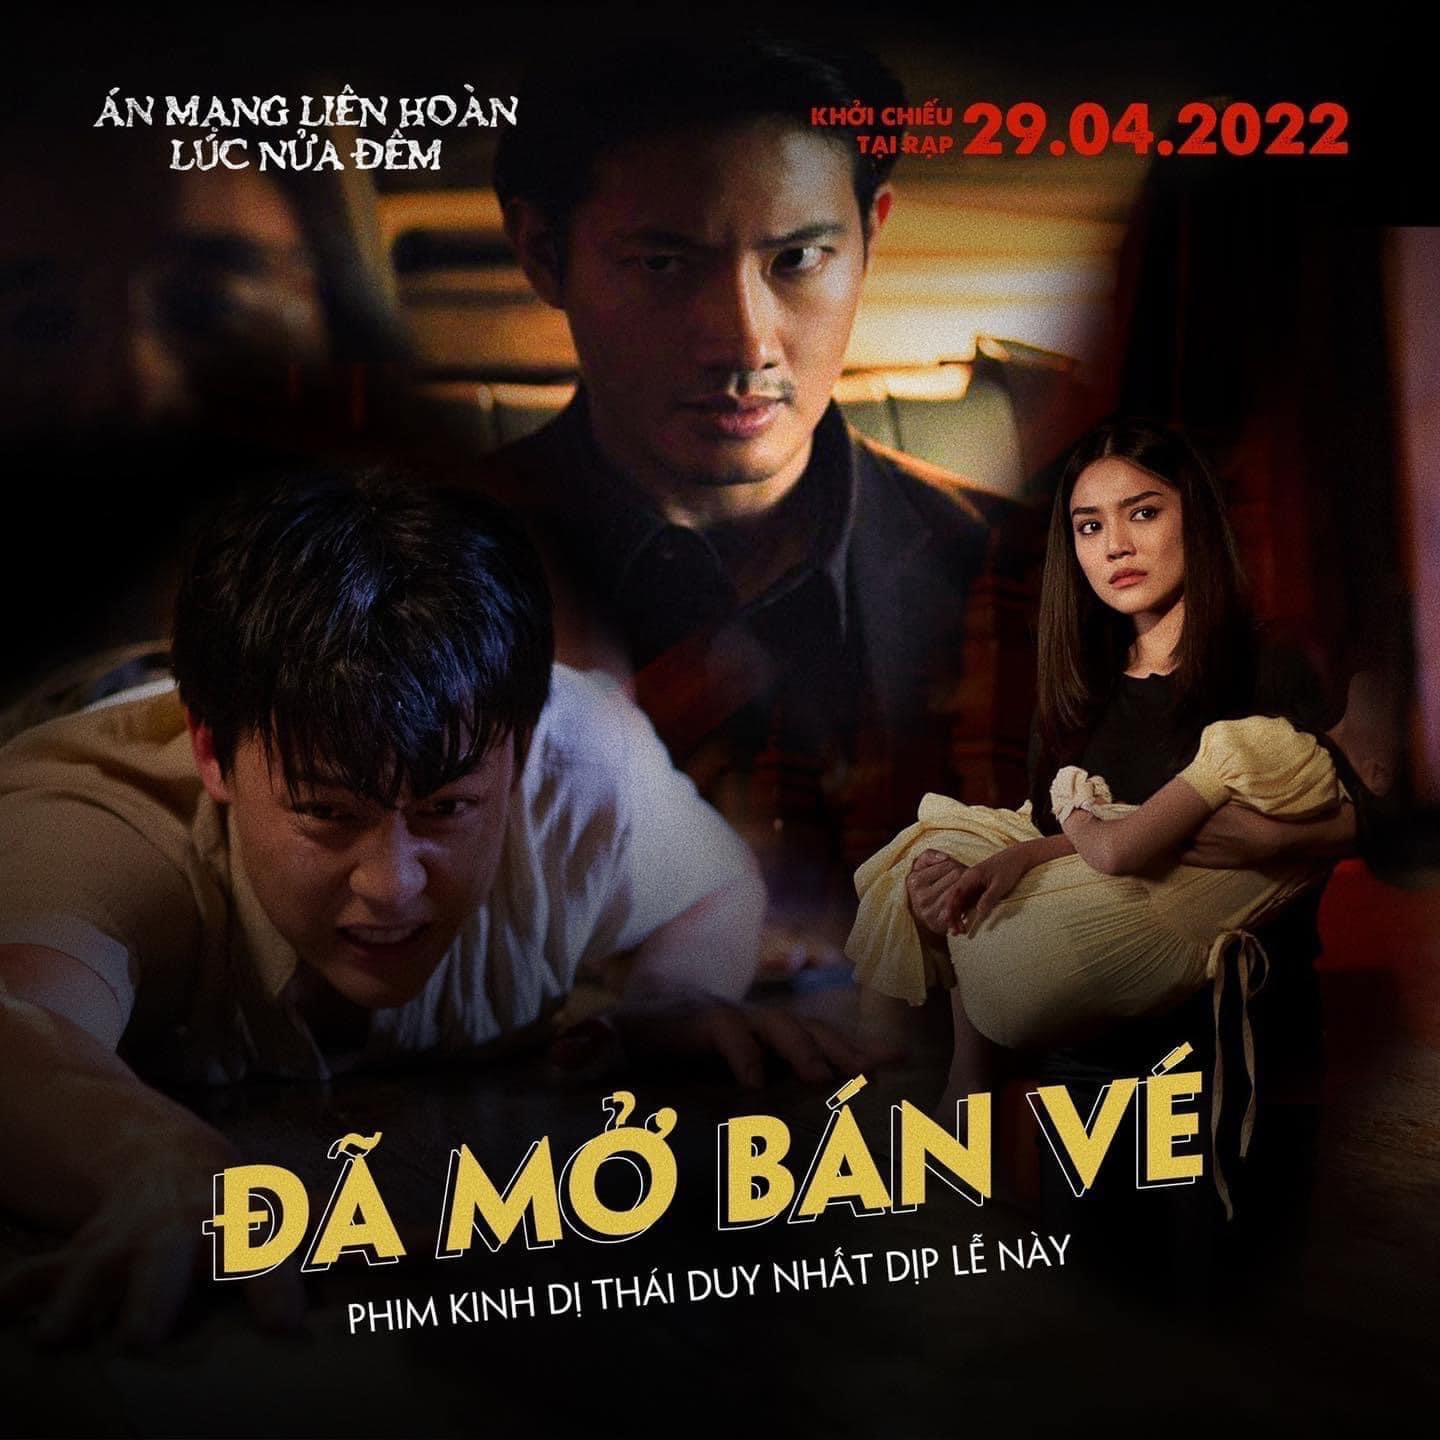 Phim kinh dị: Mùa lễ hội này, hãy để cho phim kinh dị Thái Lan khiến những giấc mơ của bạn trở nên đáng sợ hơn! Đón xem hình ảnh liên quan để tìm hiểu thêm về phim kinh dị này.